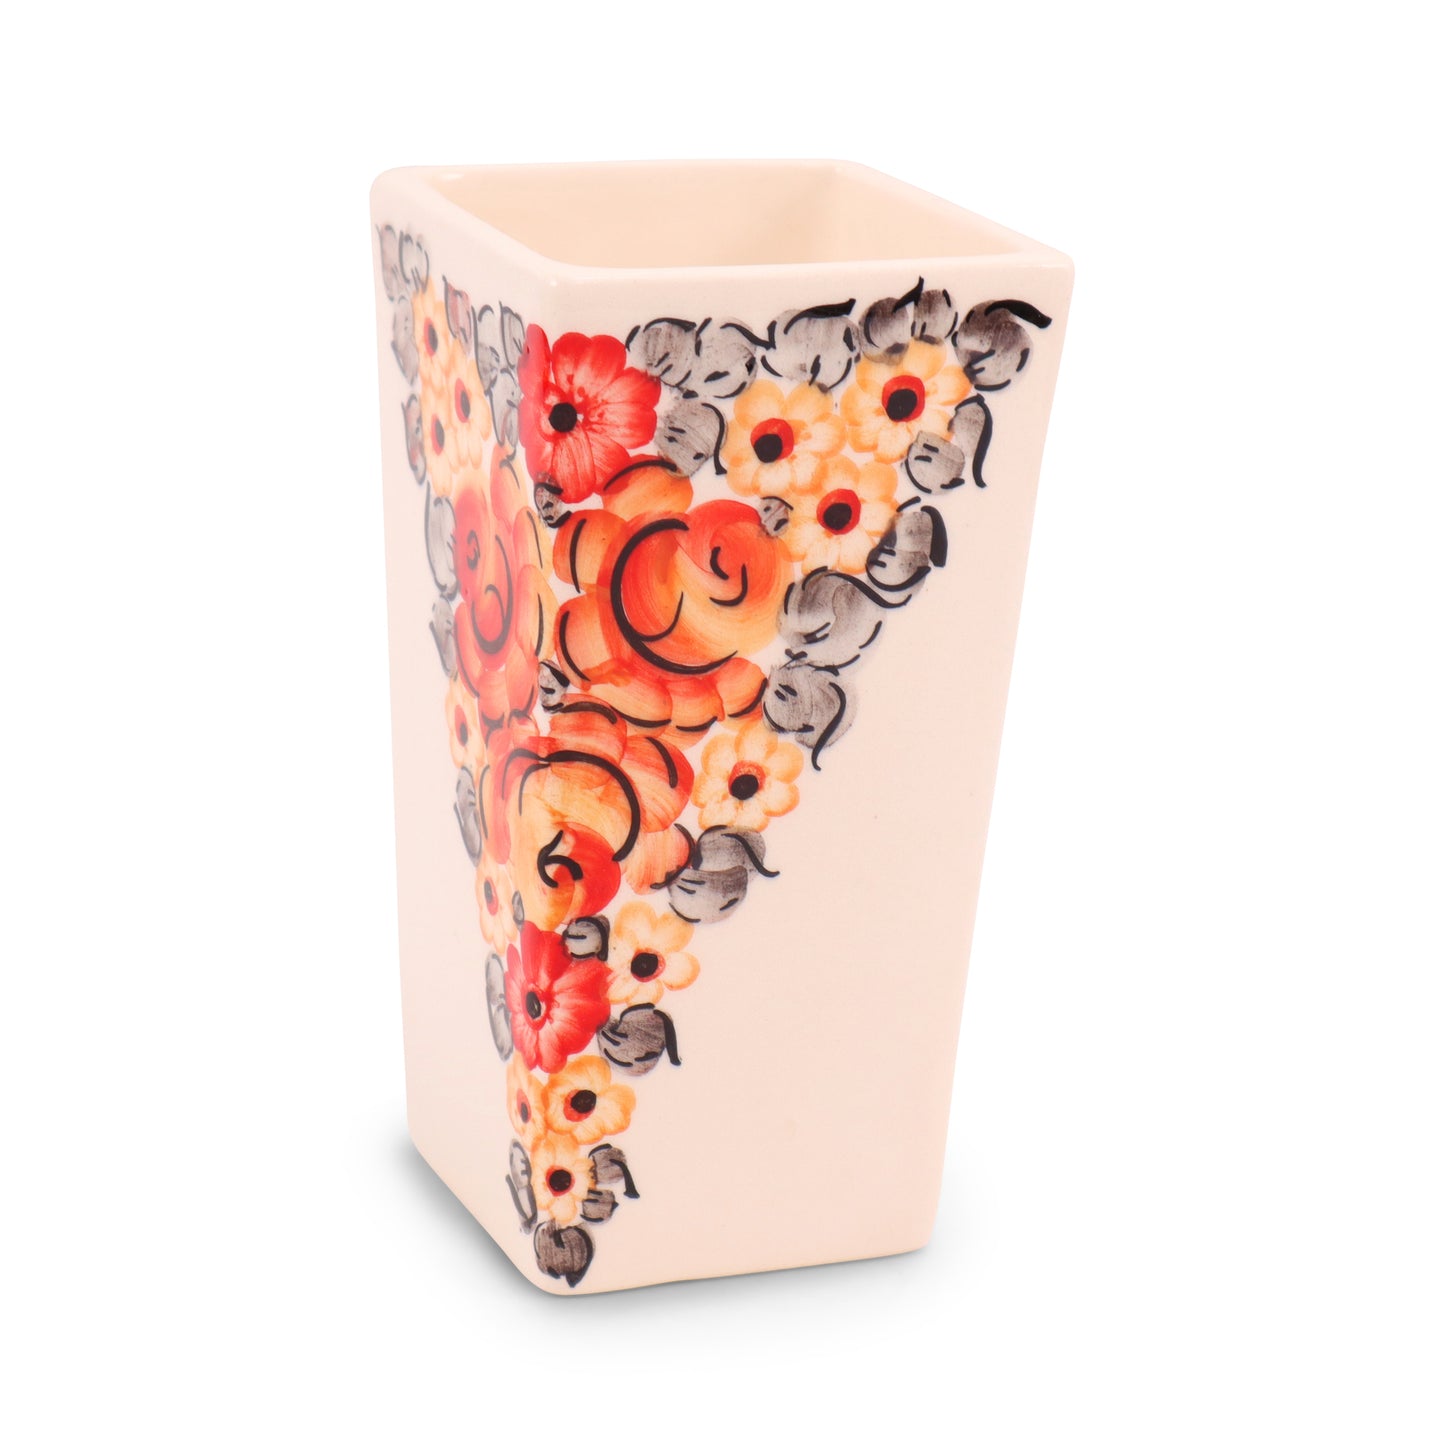 3"x6.5" Rectangular Vase. Pattern: Red